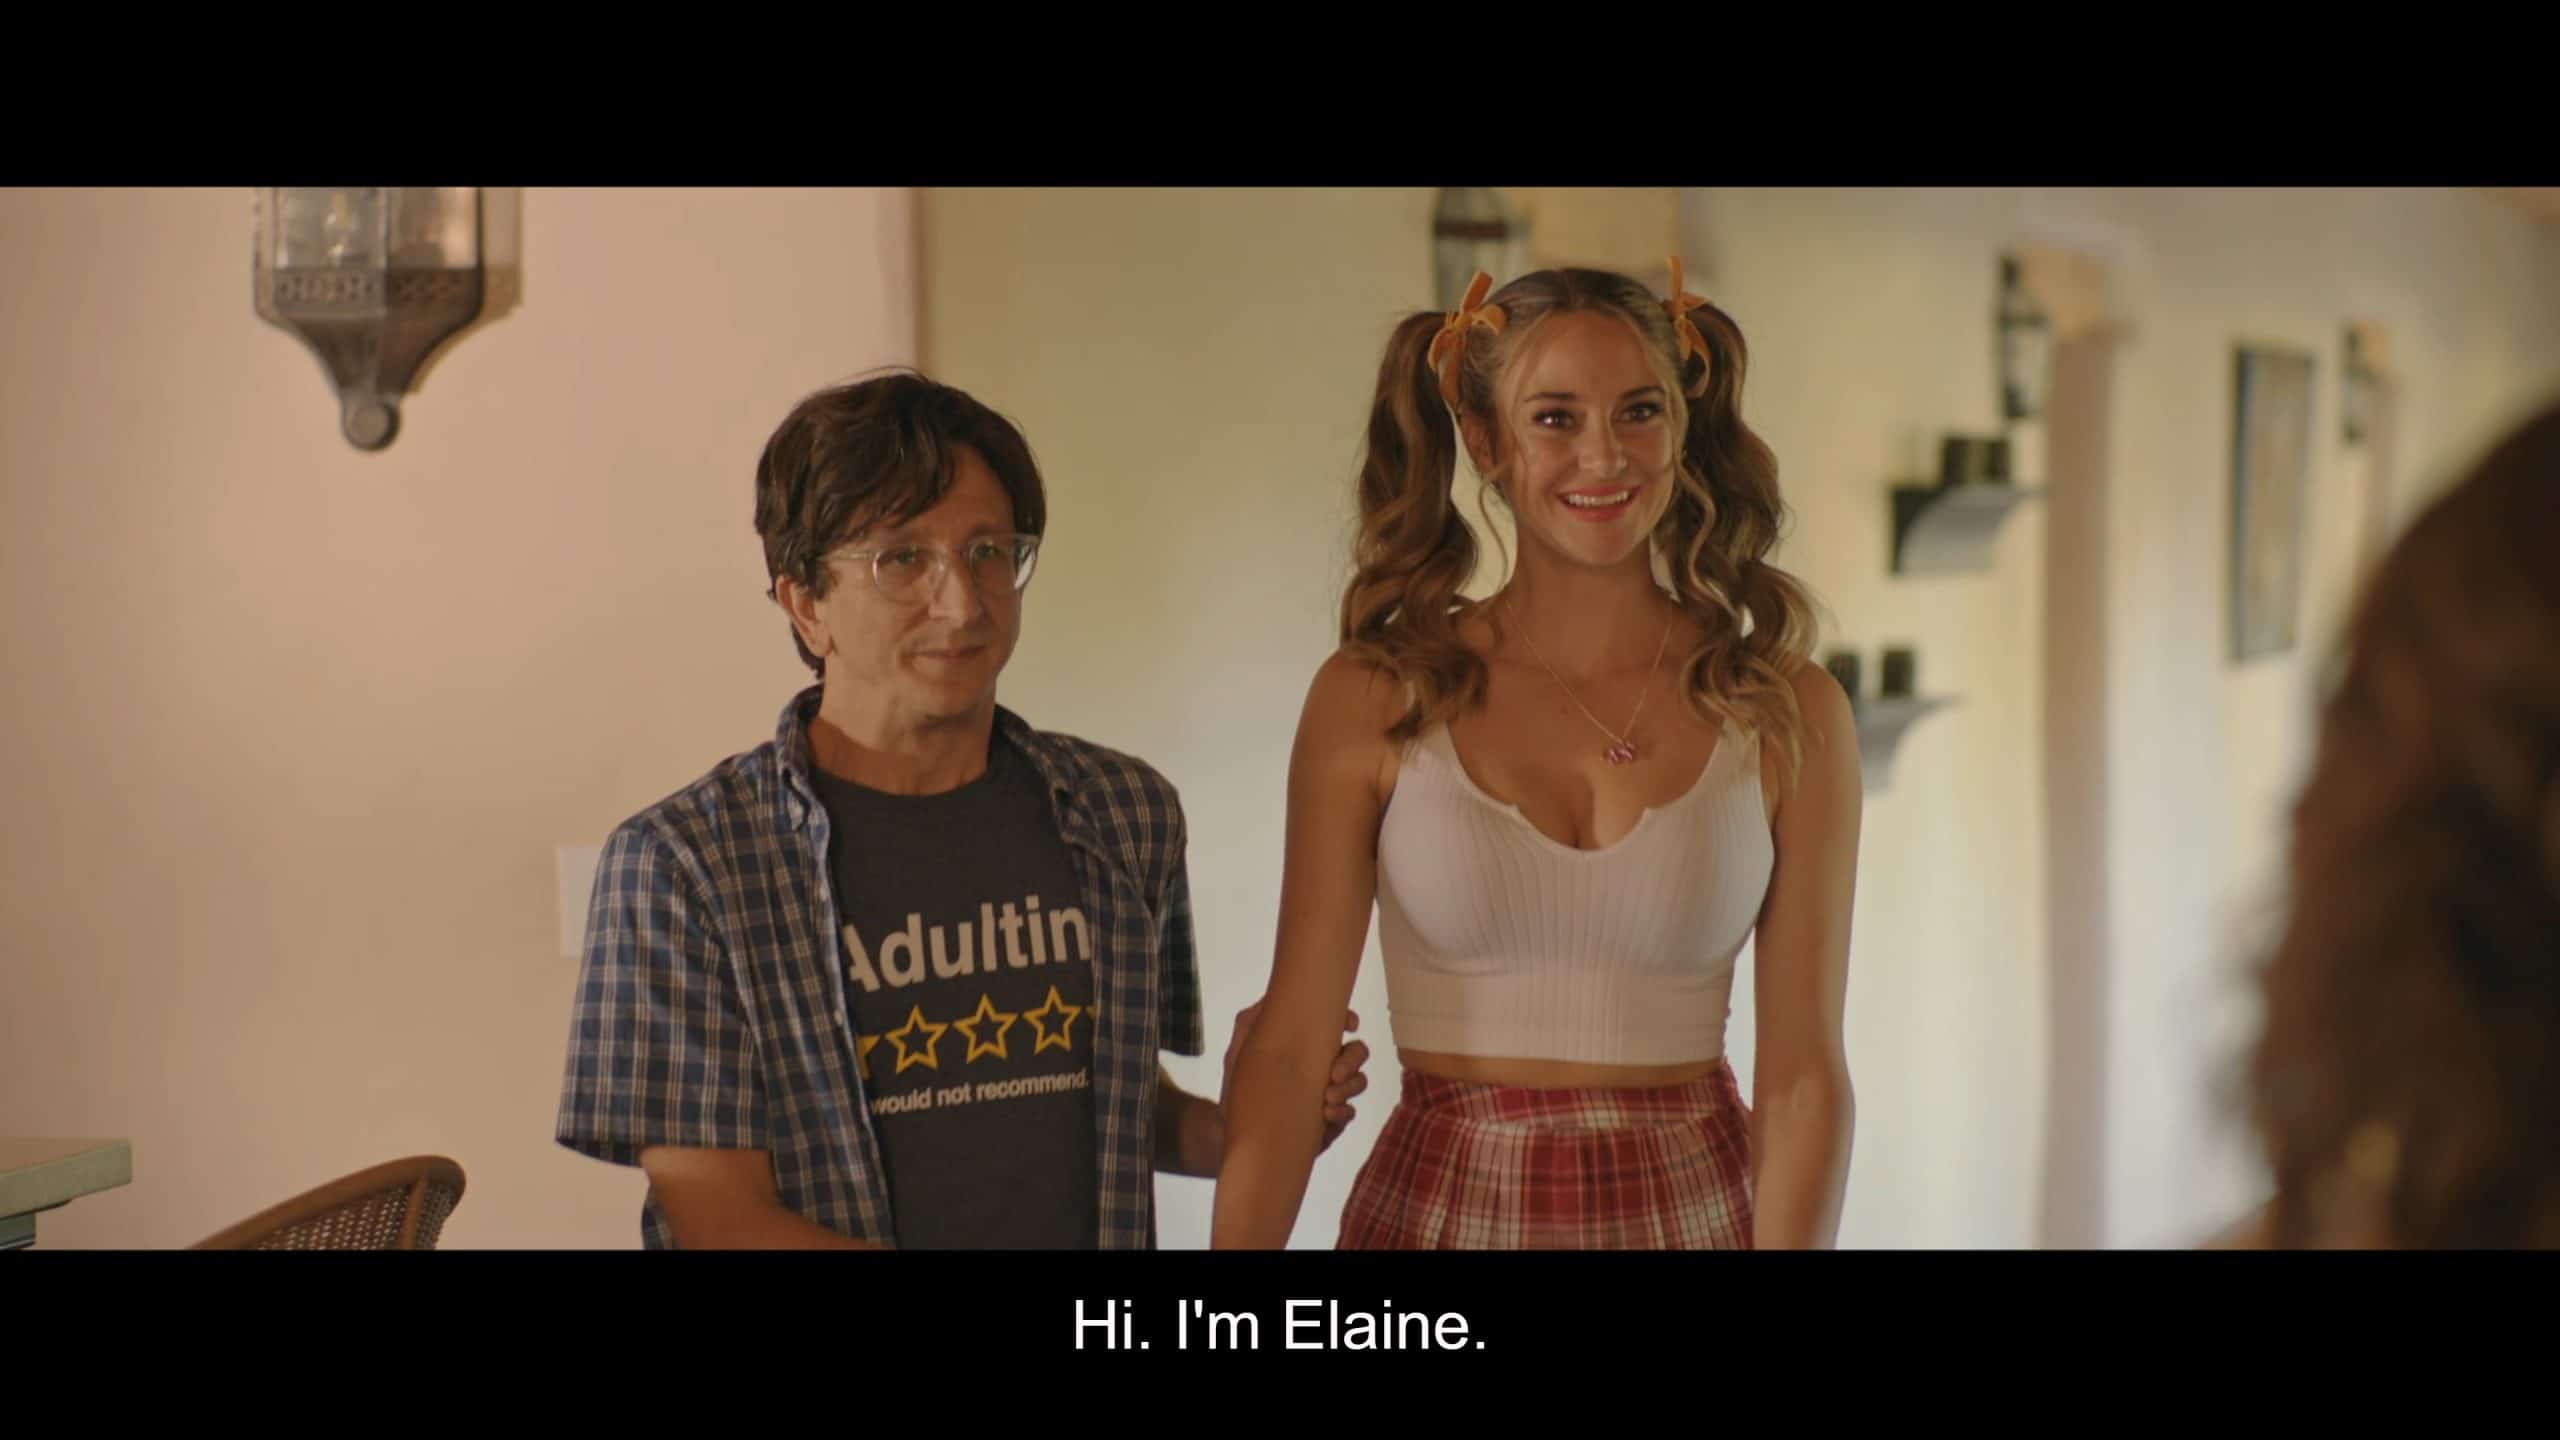 Zach (Paul Rust) and Elaine 3 (Shailene Woodley)